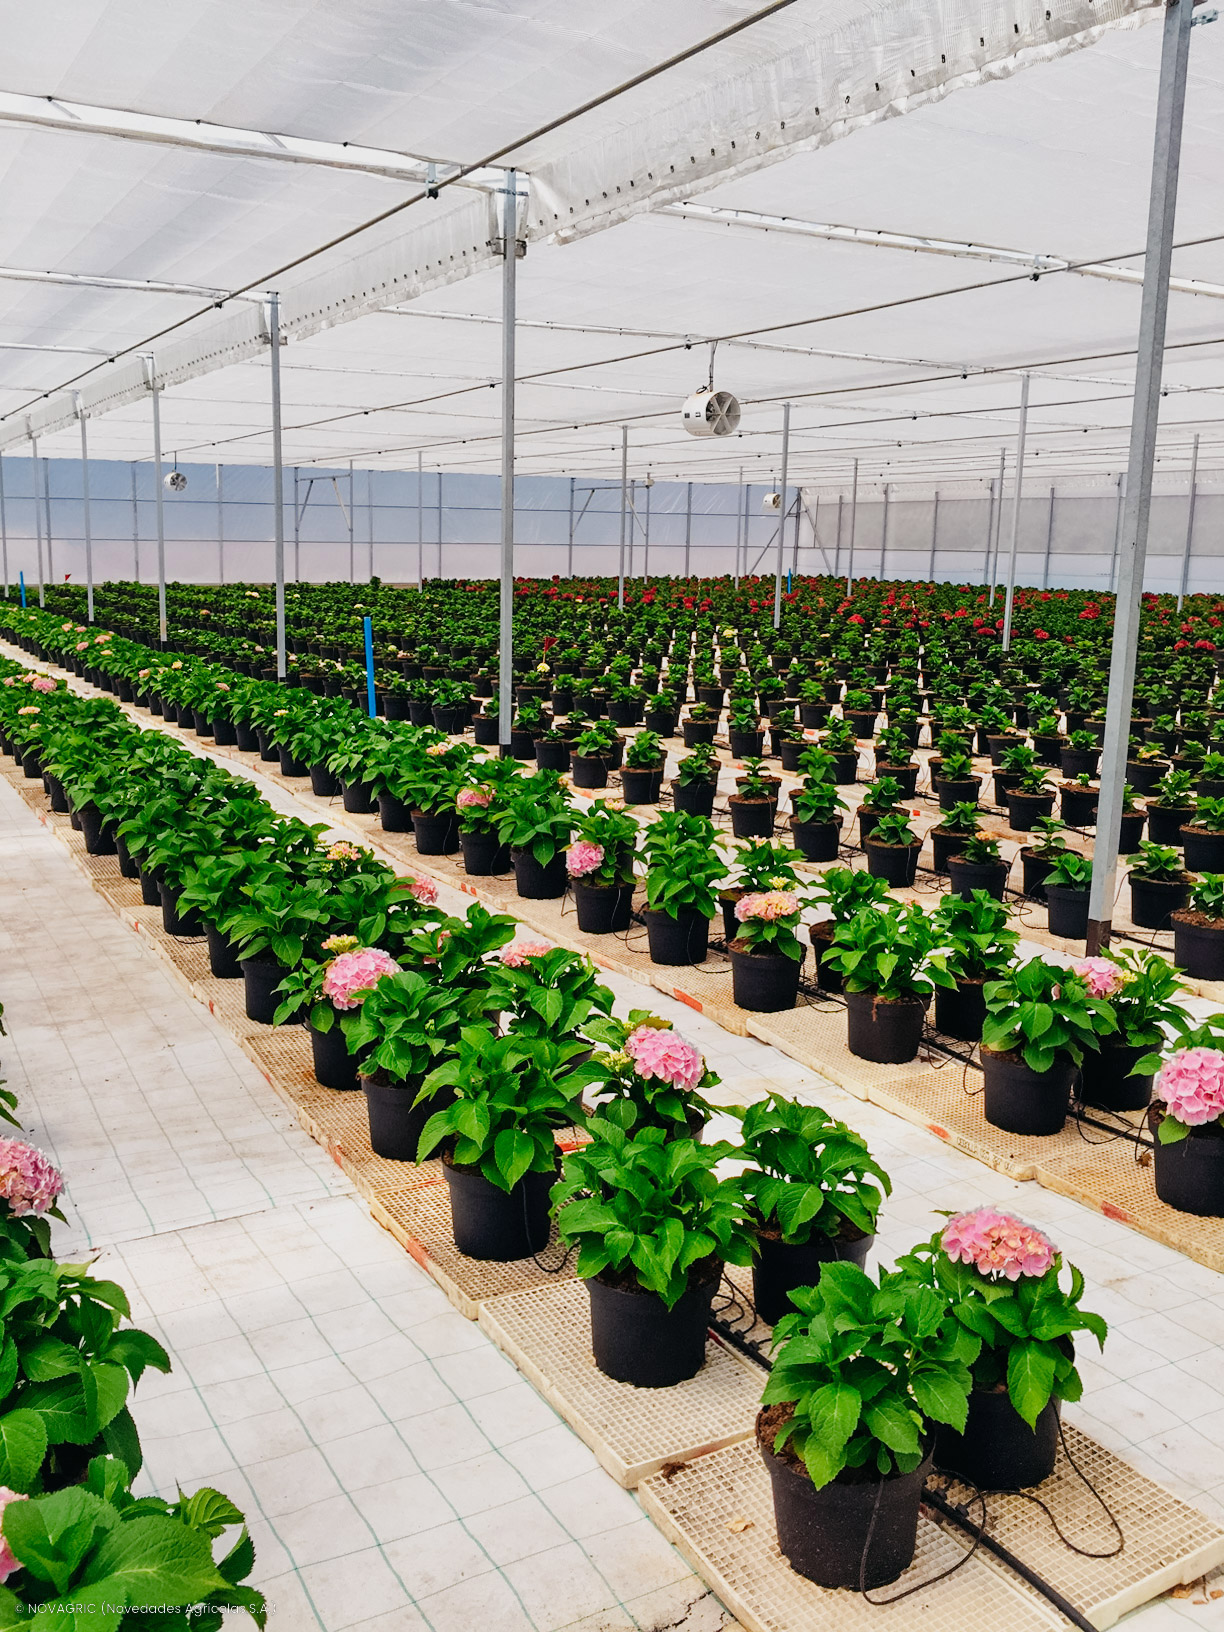 Novagric implementó invernaderos avanzados para la producción y exportación de hortensias hidropónicas en Chile, con control de clima y fertirriego.